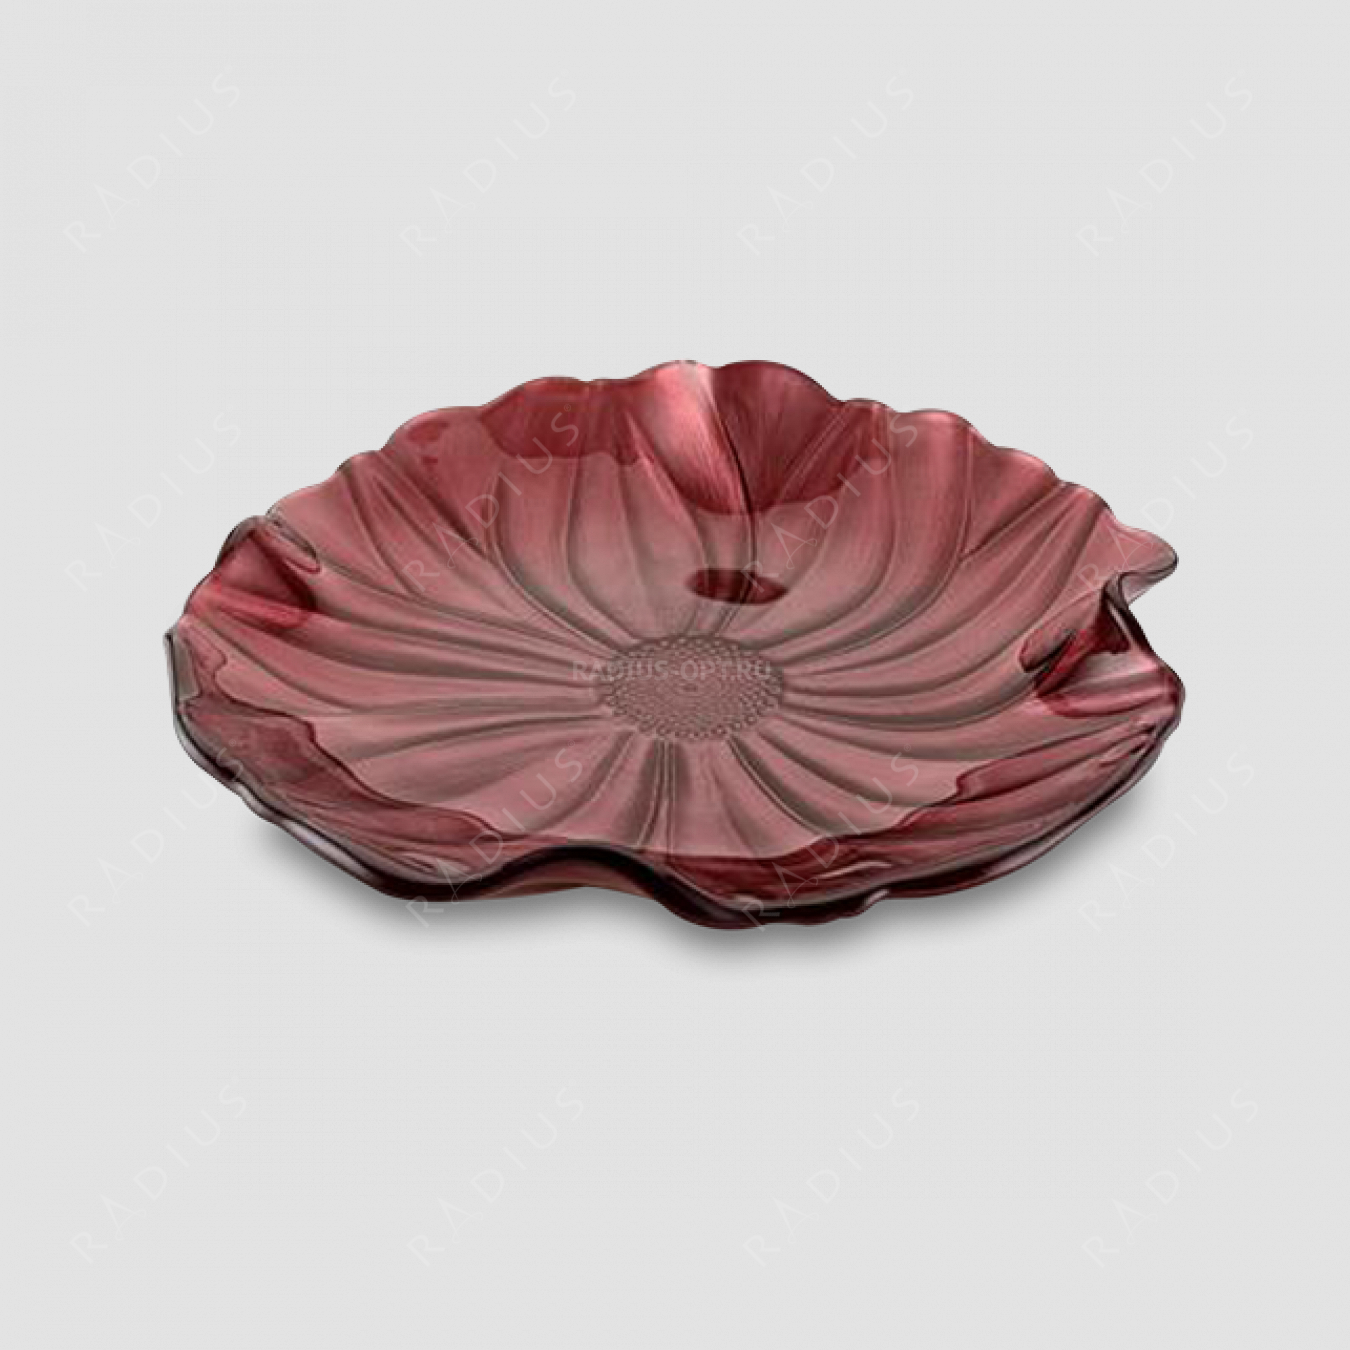 Блюдо круглое малое, диаметр: 22 см, высота: 3,5 см, материал: стекло, цвет: красный, серия Magnolia, IVV (Italy), Италия